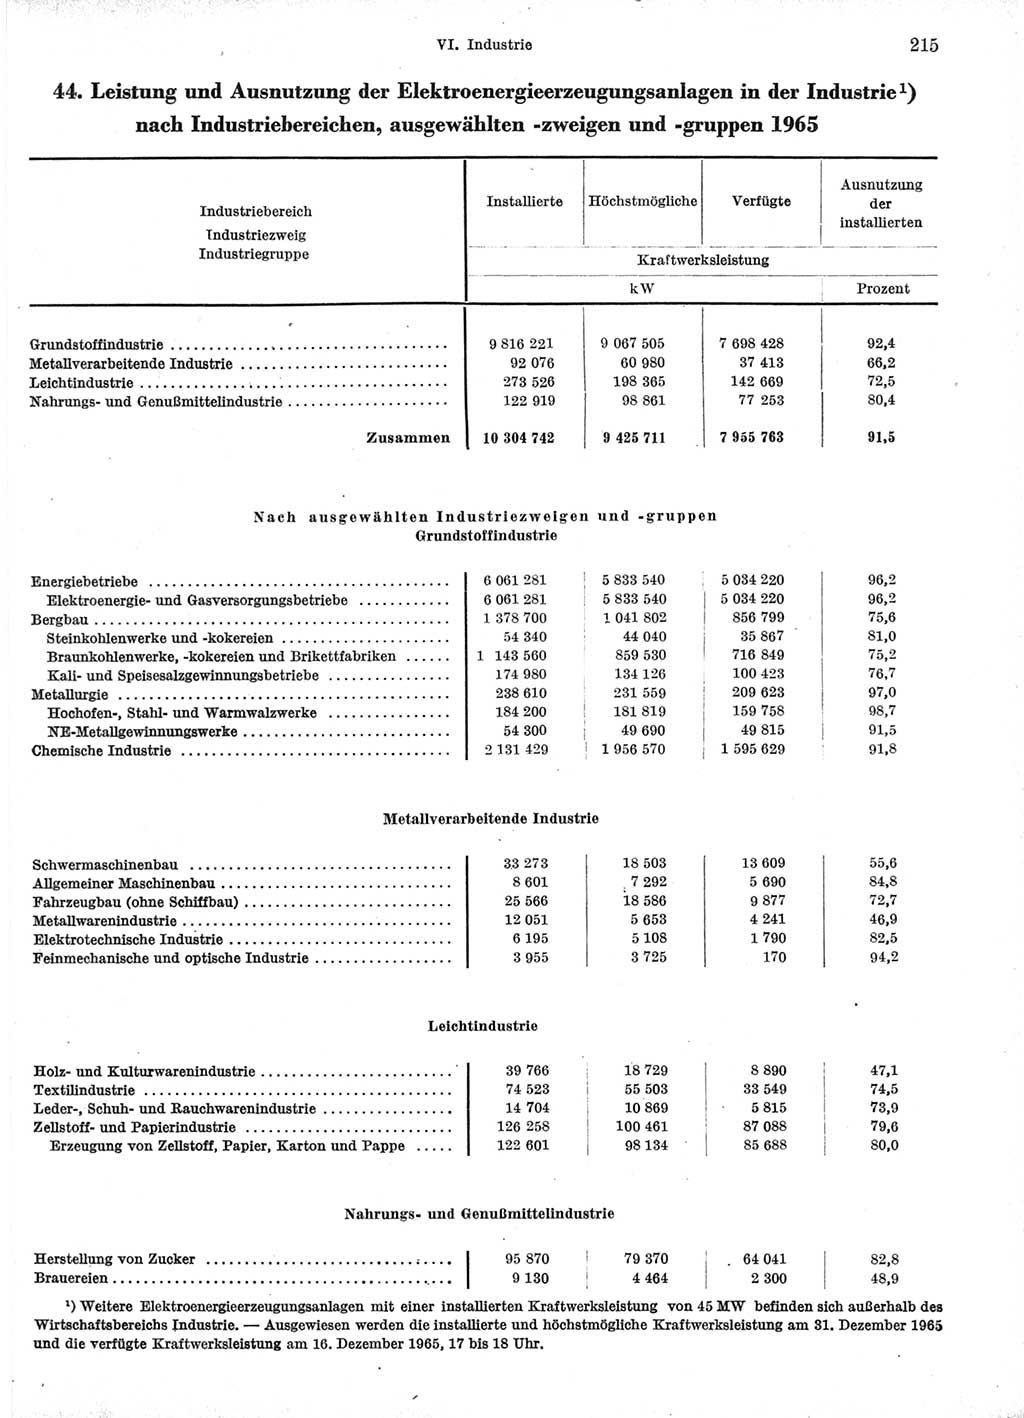 Statistisches Jahrbuch der Deutschen Demokratischen Republik (DDR) 1966, Seite 215 (Stat. Jb. DDR 1966, S. 215)